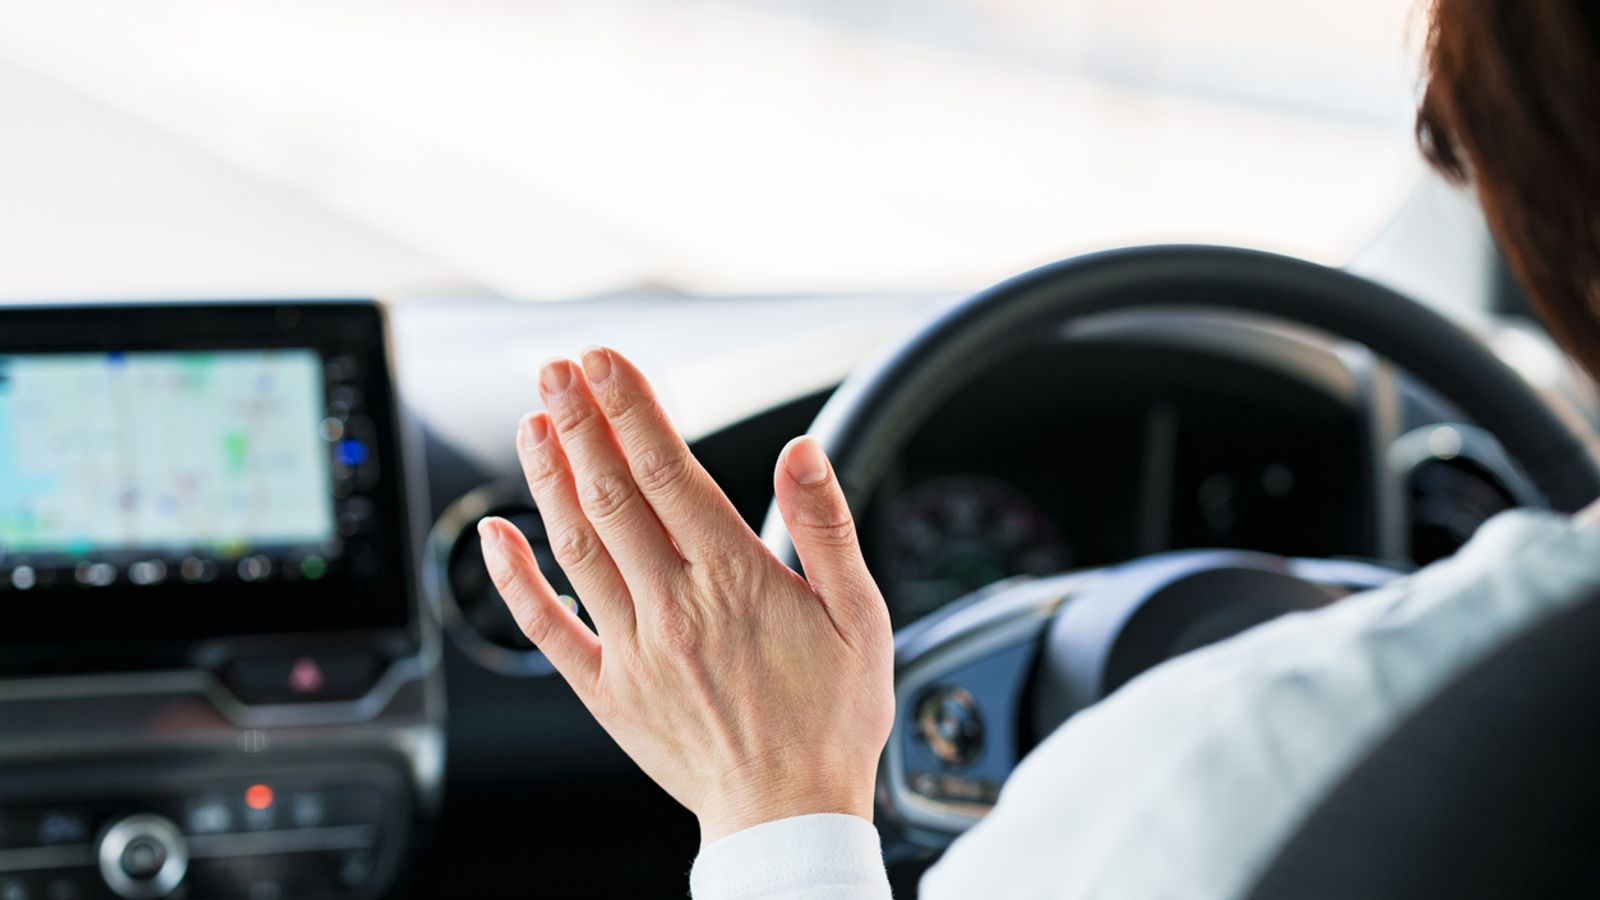 Самоуправляващите се автомобили се оказаха по-безопасни - освен на зазоряване, здрач или при завиване, според проучване